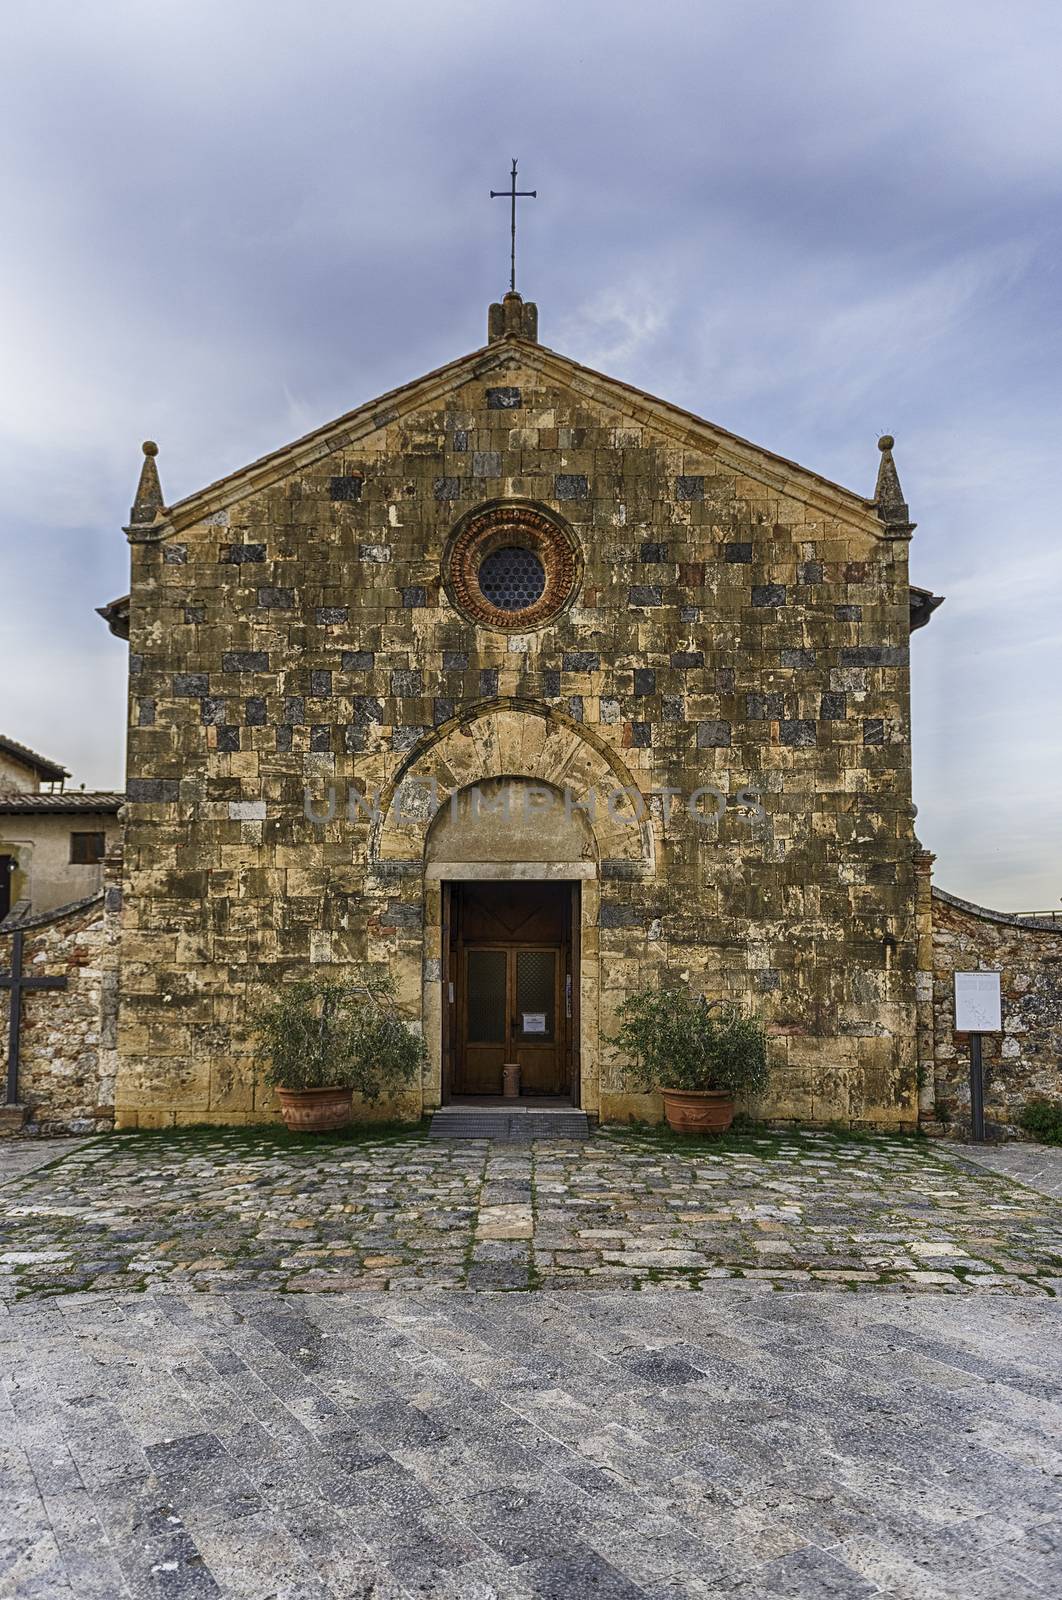 Church of Santa Maria in the town of Monteriggioni, Italy by marcorubino